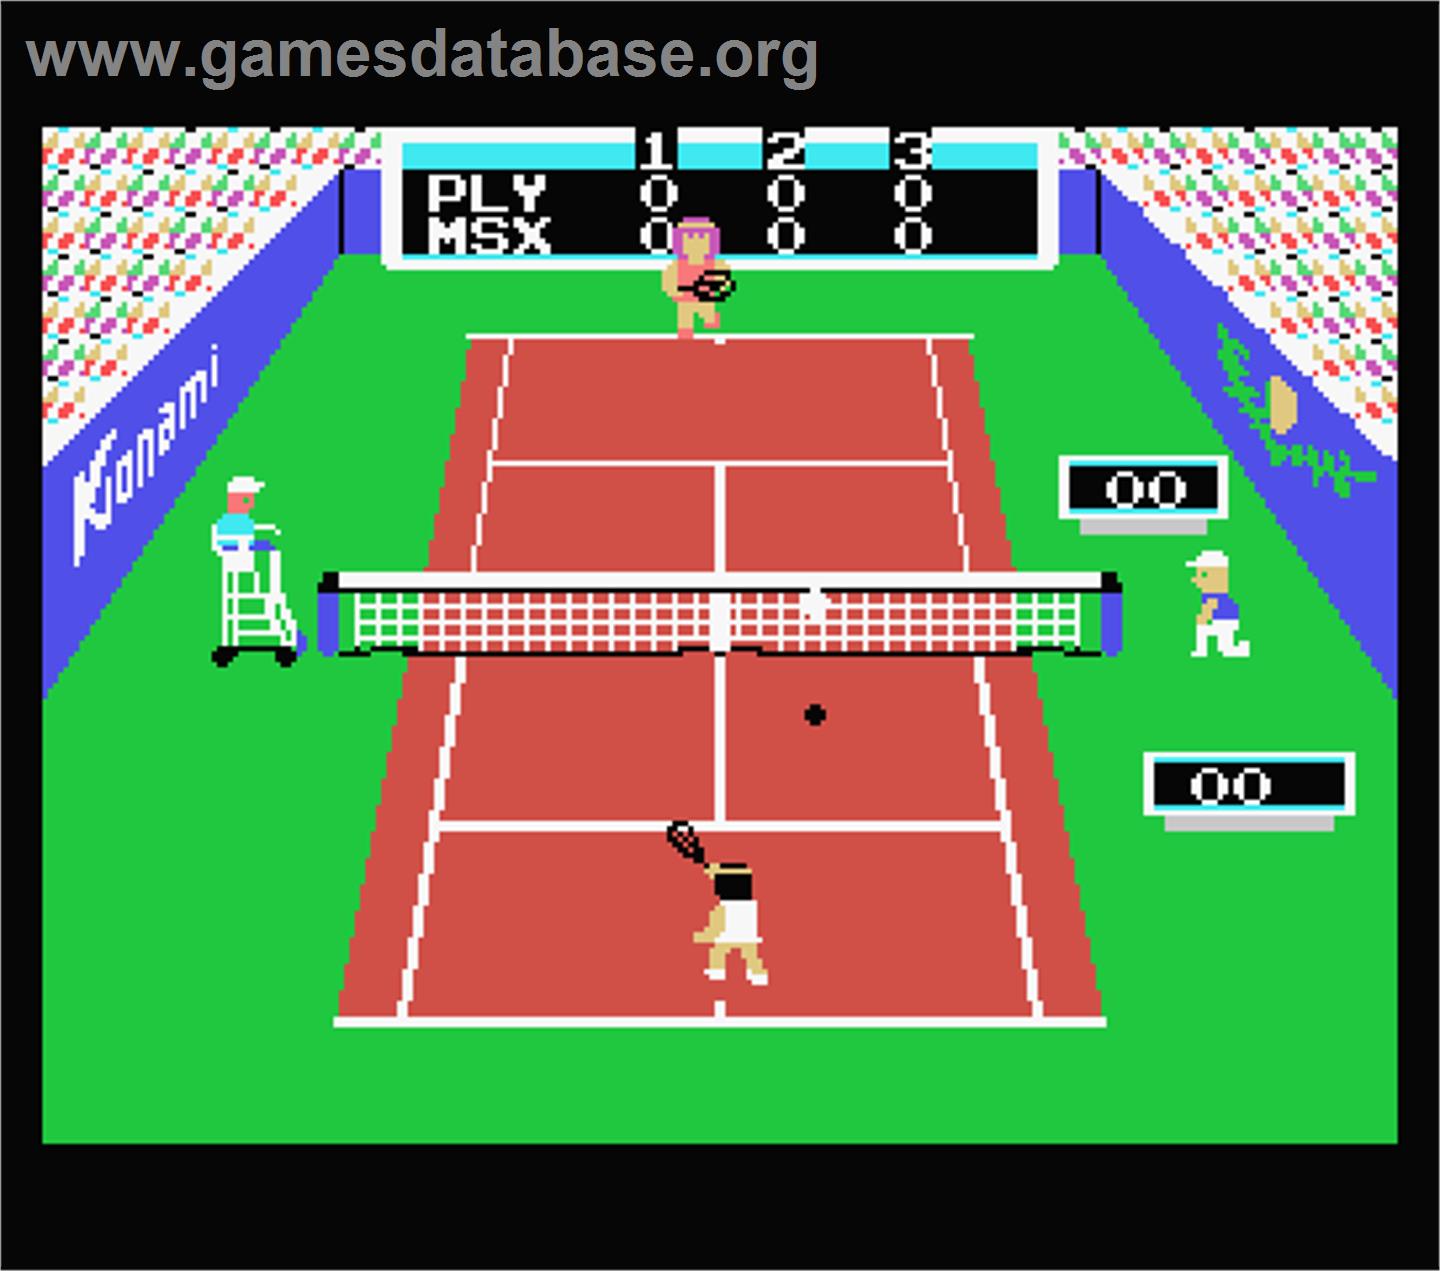 Konami's Tennis - MSX - Artwork - In Game